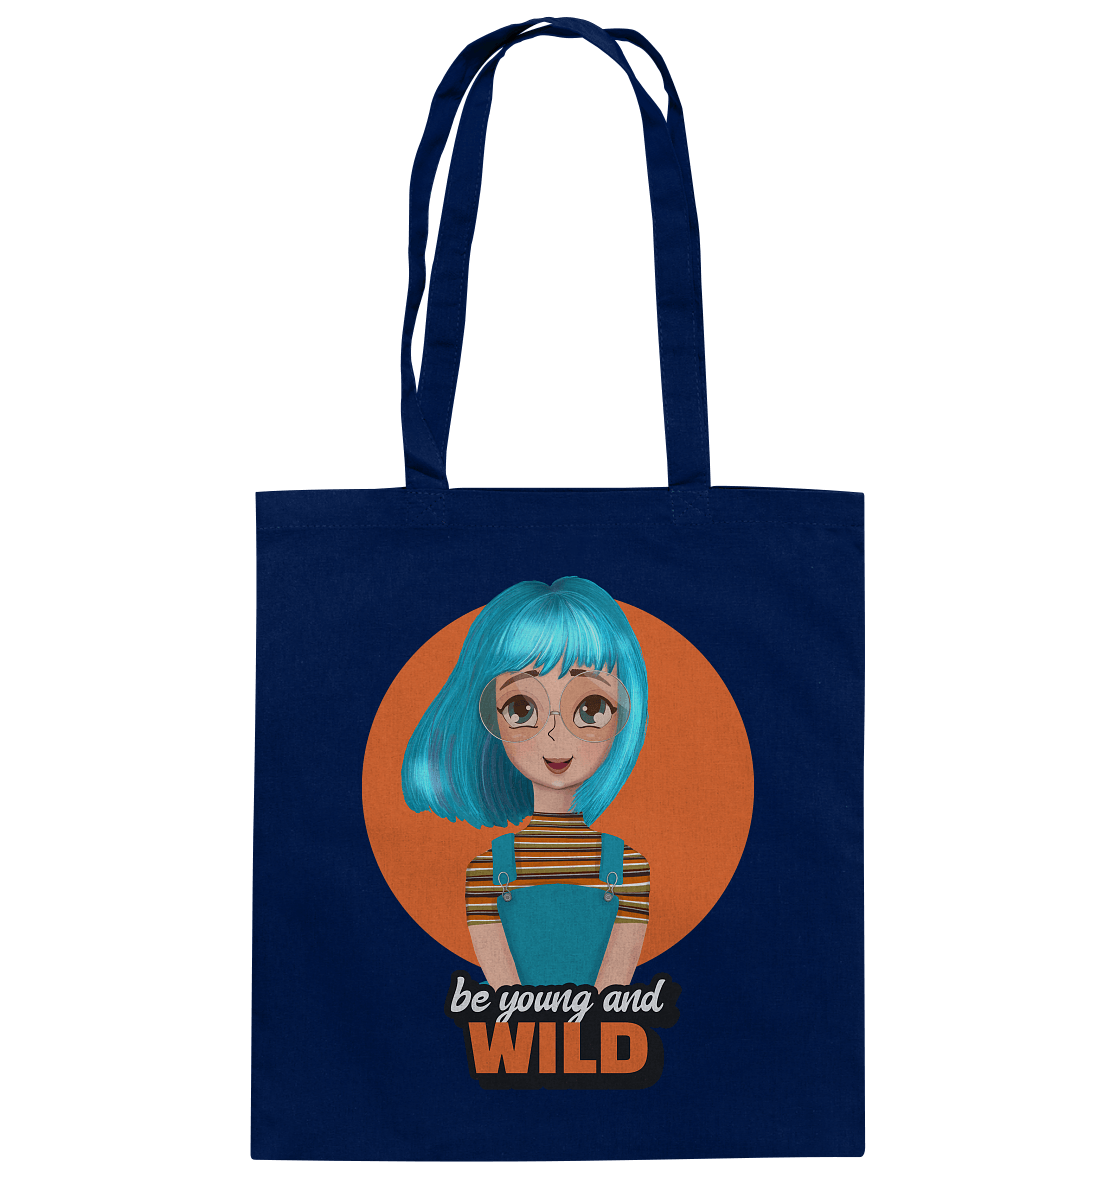 CArtoon Stofftasche be young and wild mit Cartoon Girl türkis Tasche in blau